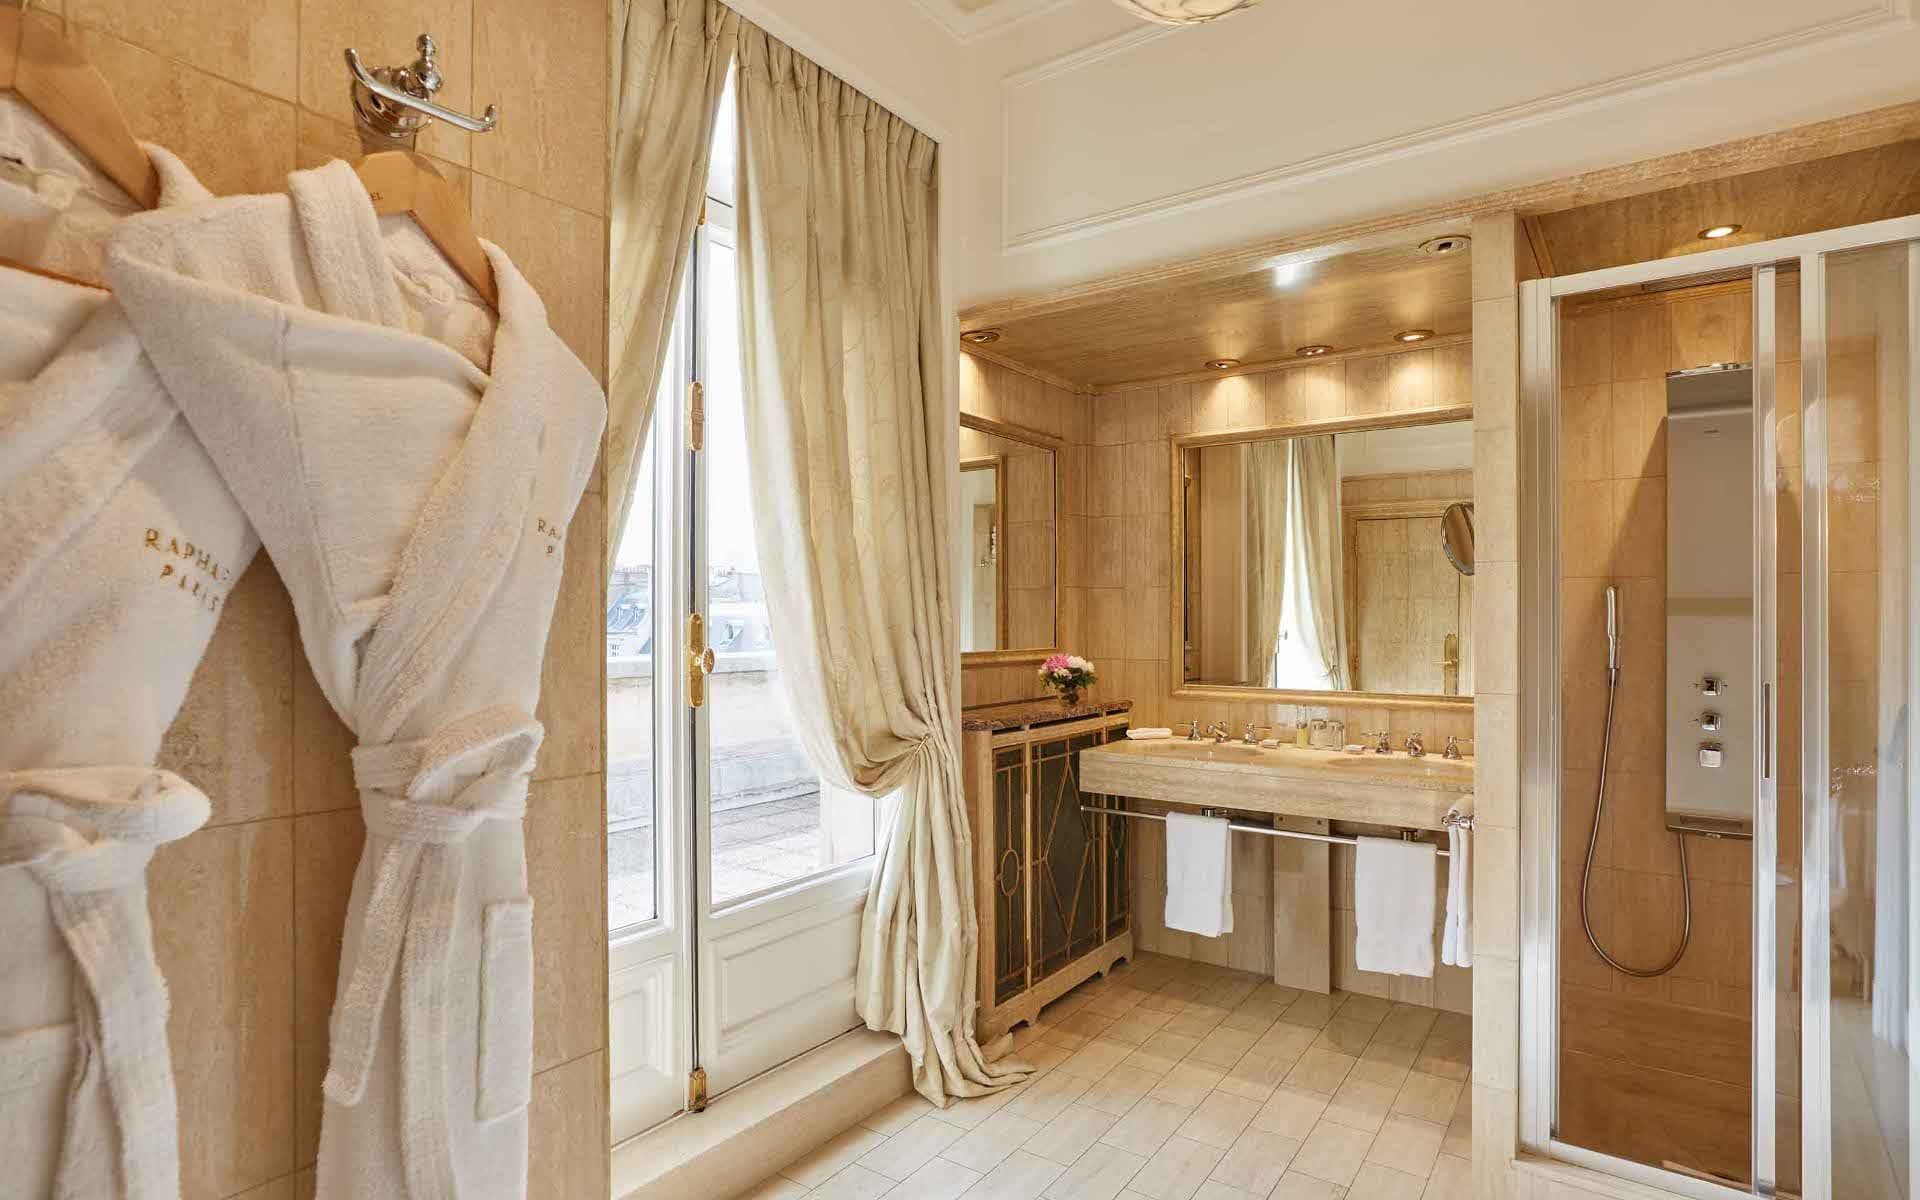 266/5-Suites/suite-arc-de-triomphe/Suite Arc de Triomphe Bathroom -  Hotel Raphael Paris.jpg